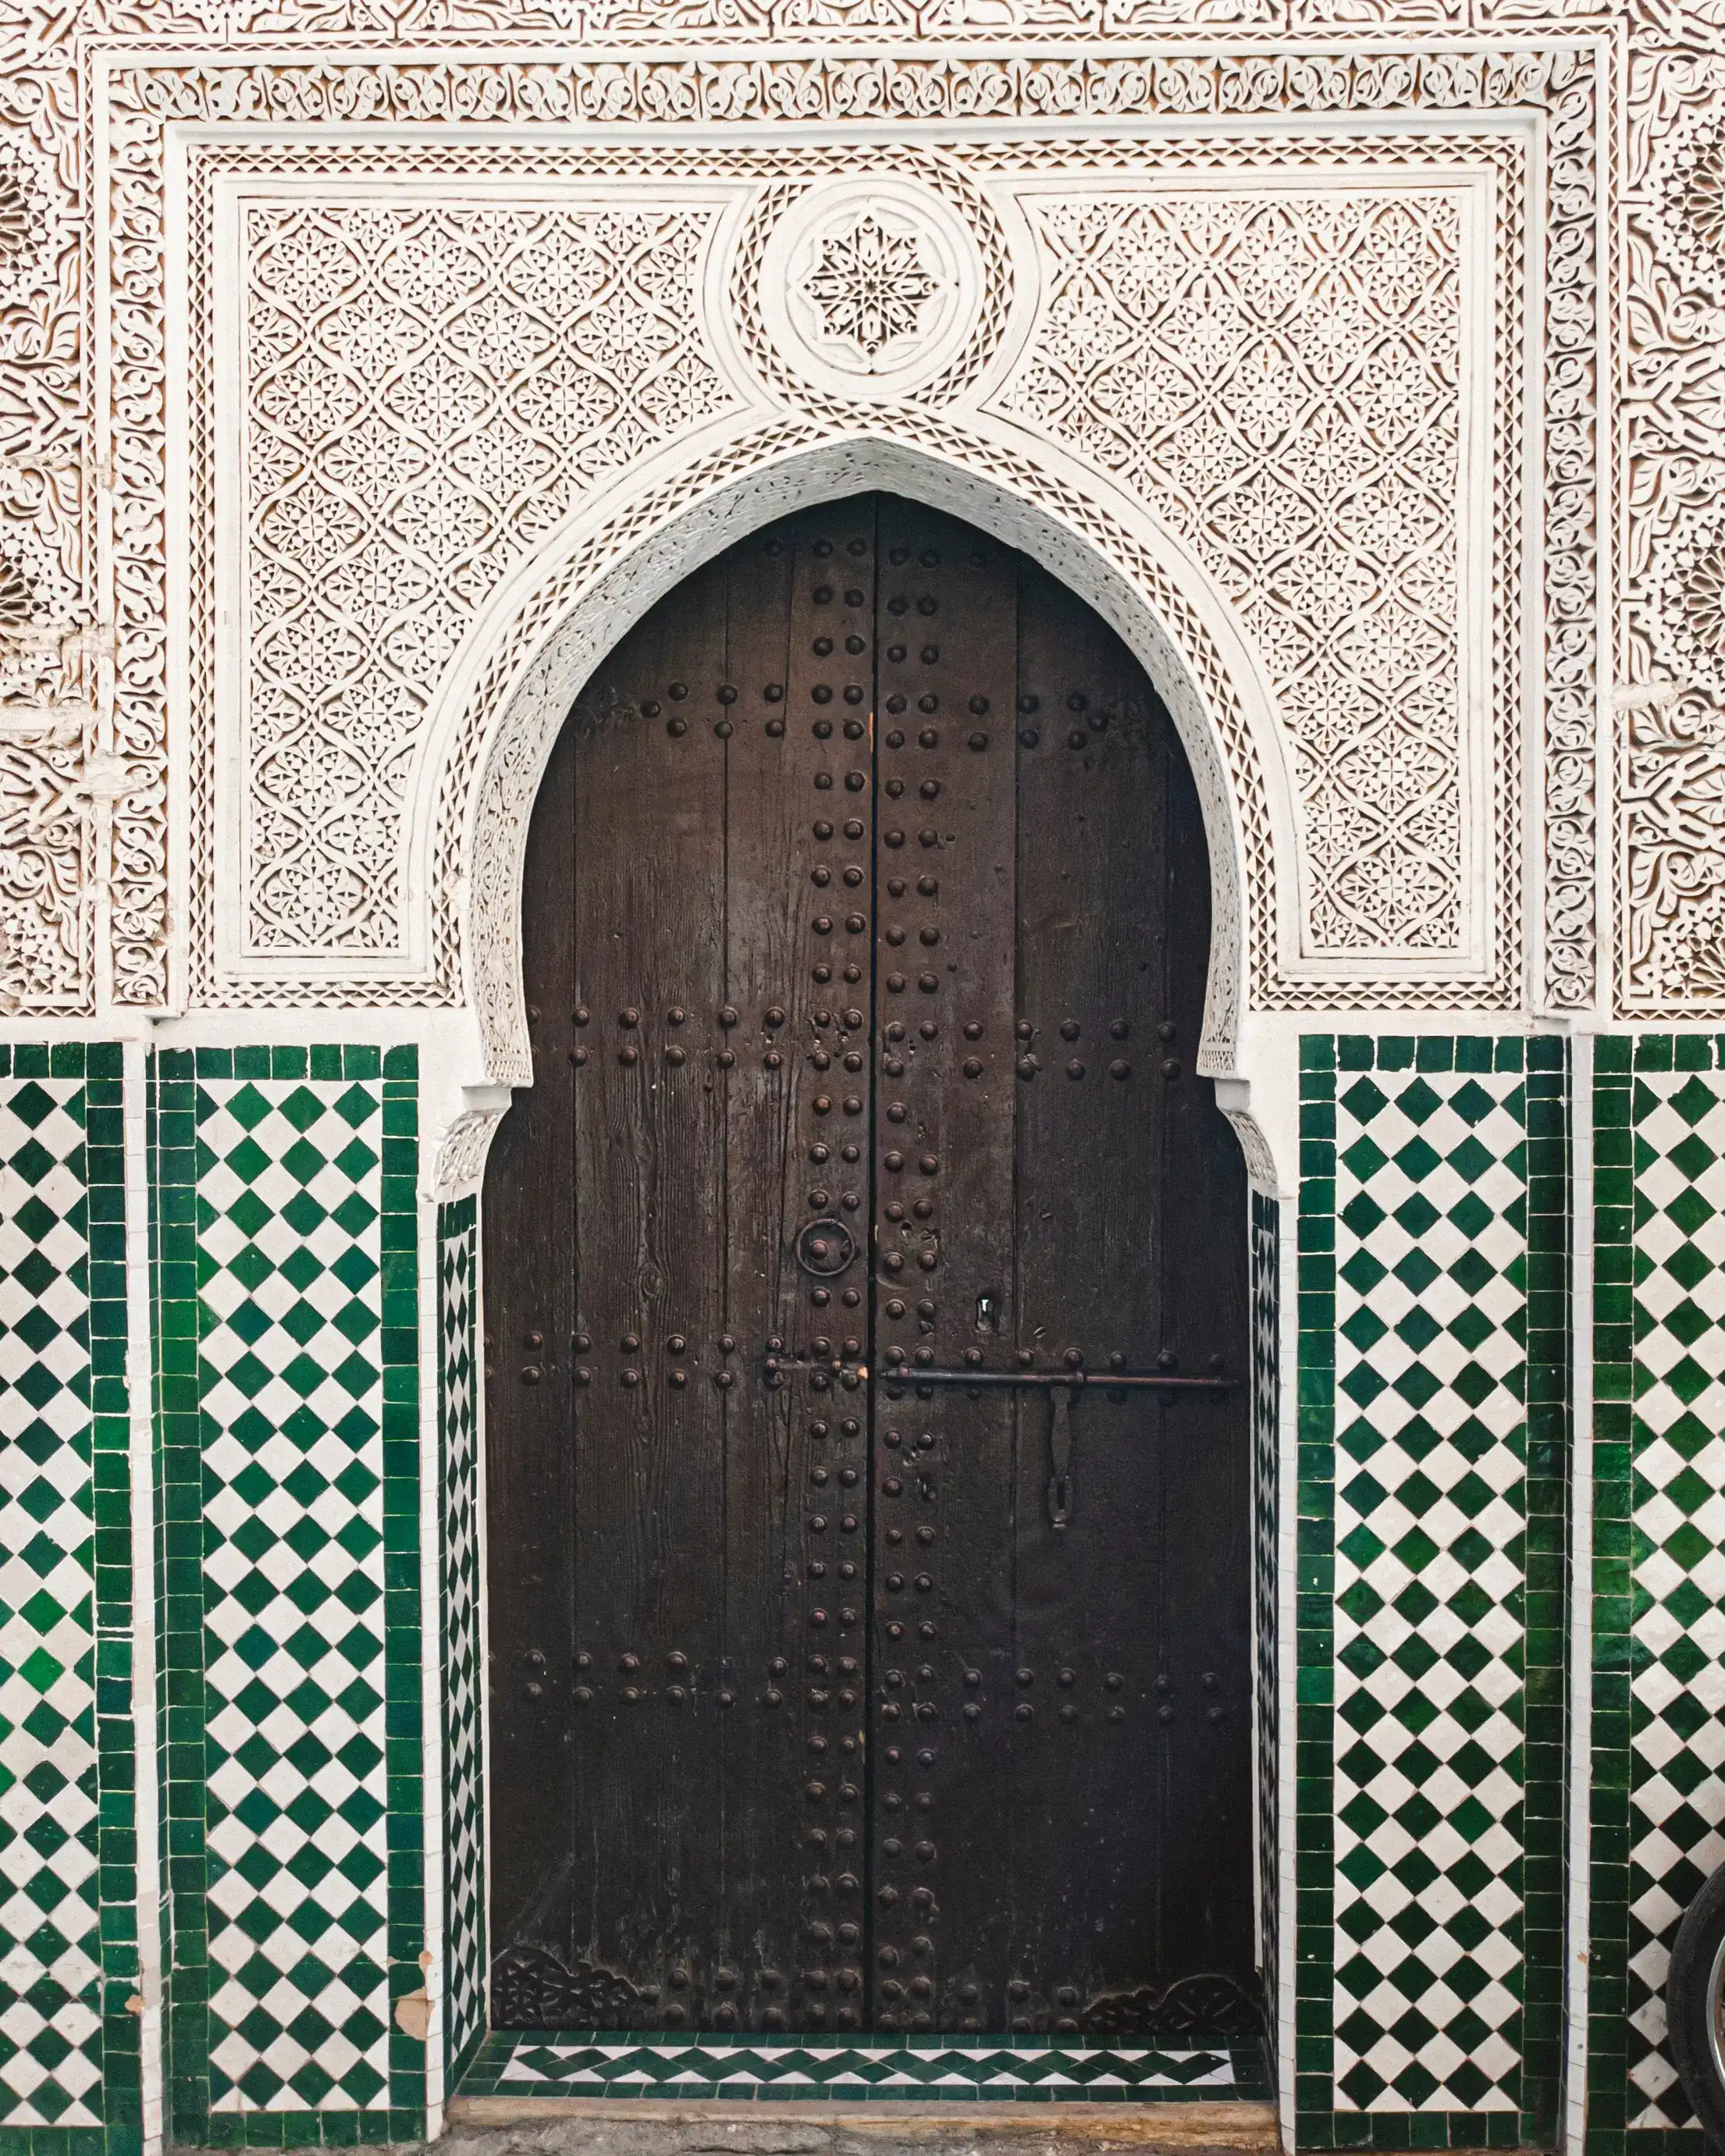 Beautiful traditional door in Morocco